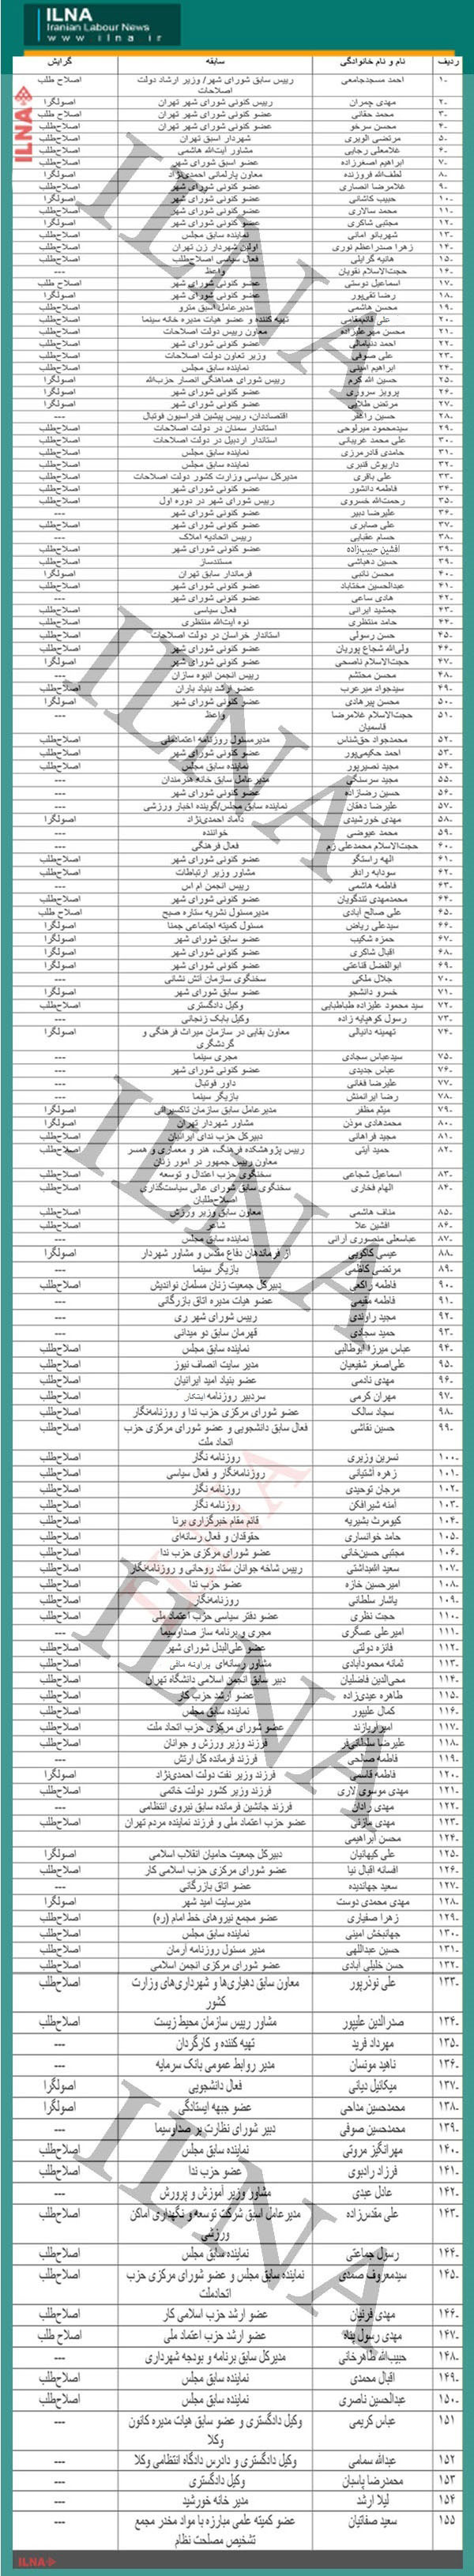 لیست چهره های شاخص انتخابات شوراهای شهر تهران